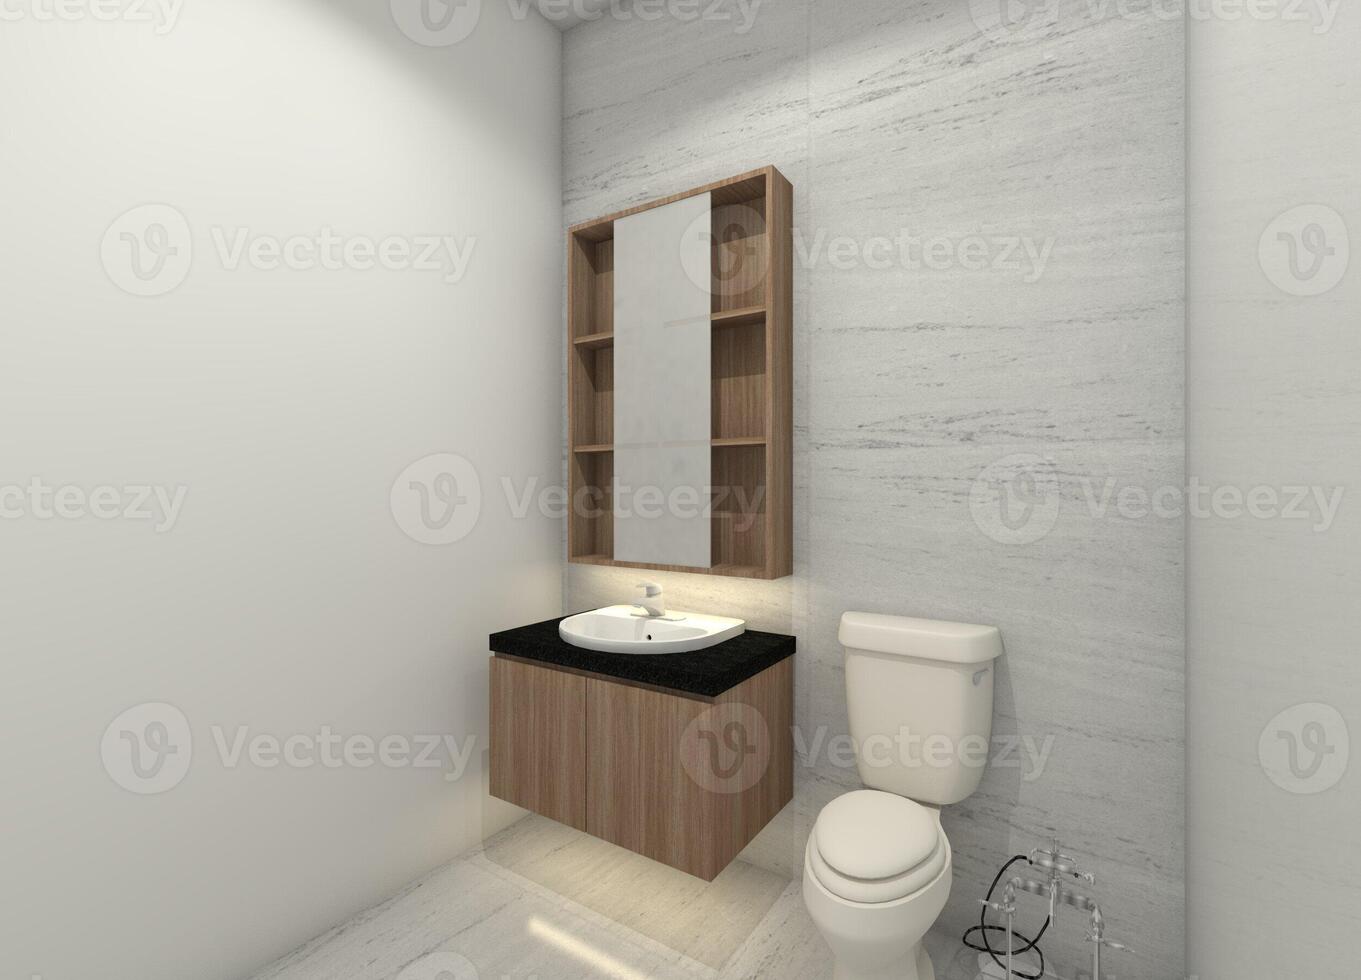 minimalistische badkamer met houten wastafel kabinet en doos spiegel kastje, 3d illustratie foto